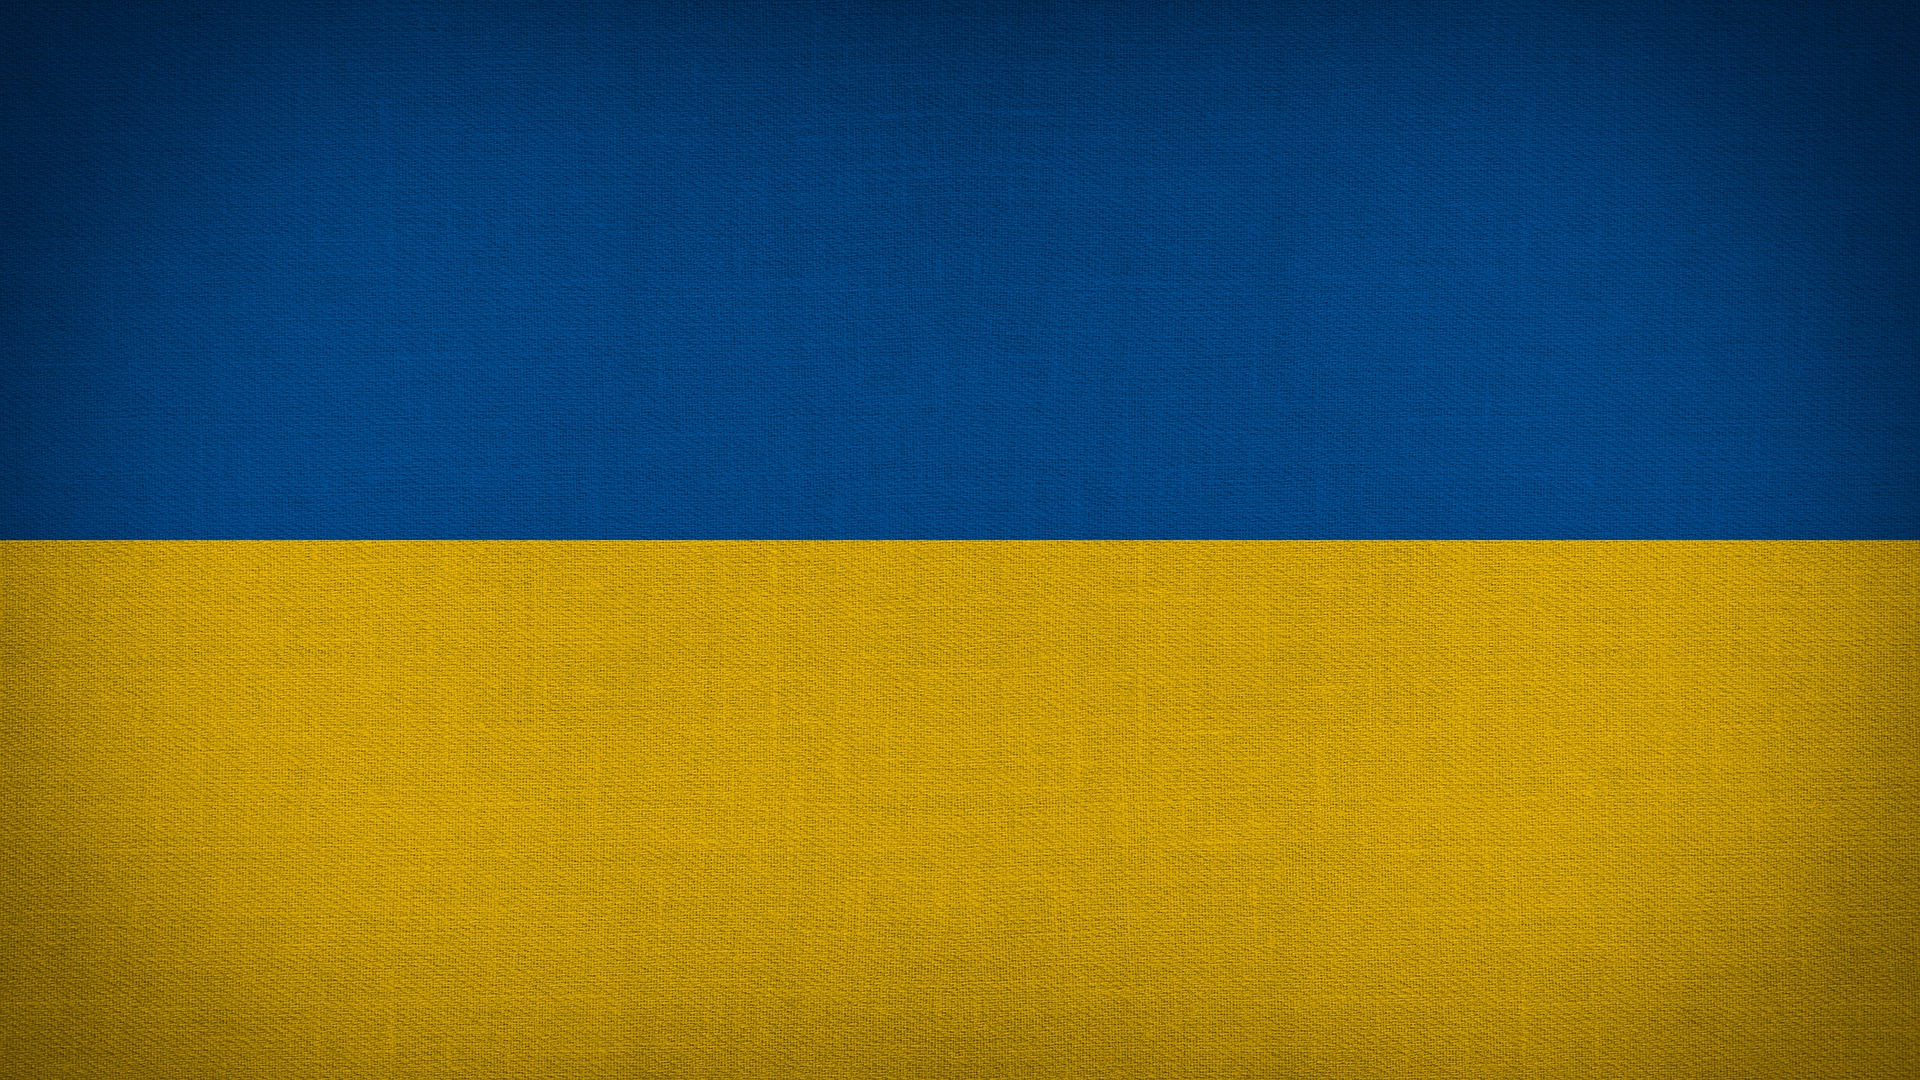 PASTERNAK LEGAL - ZASADY PRZYJĘCIA DO PRACY OBYWATELA UKRAINY